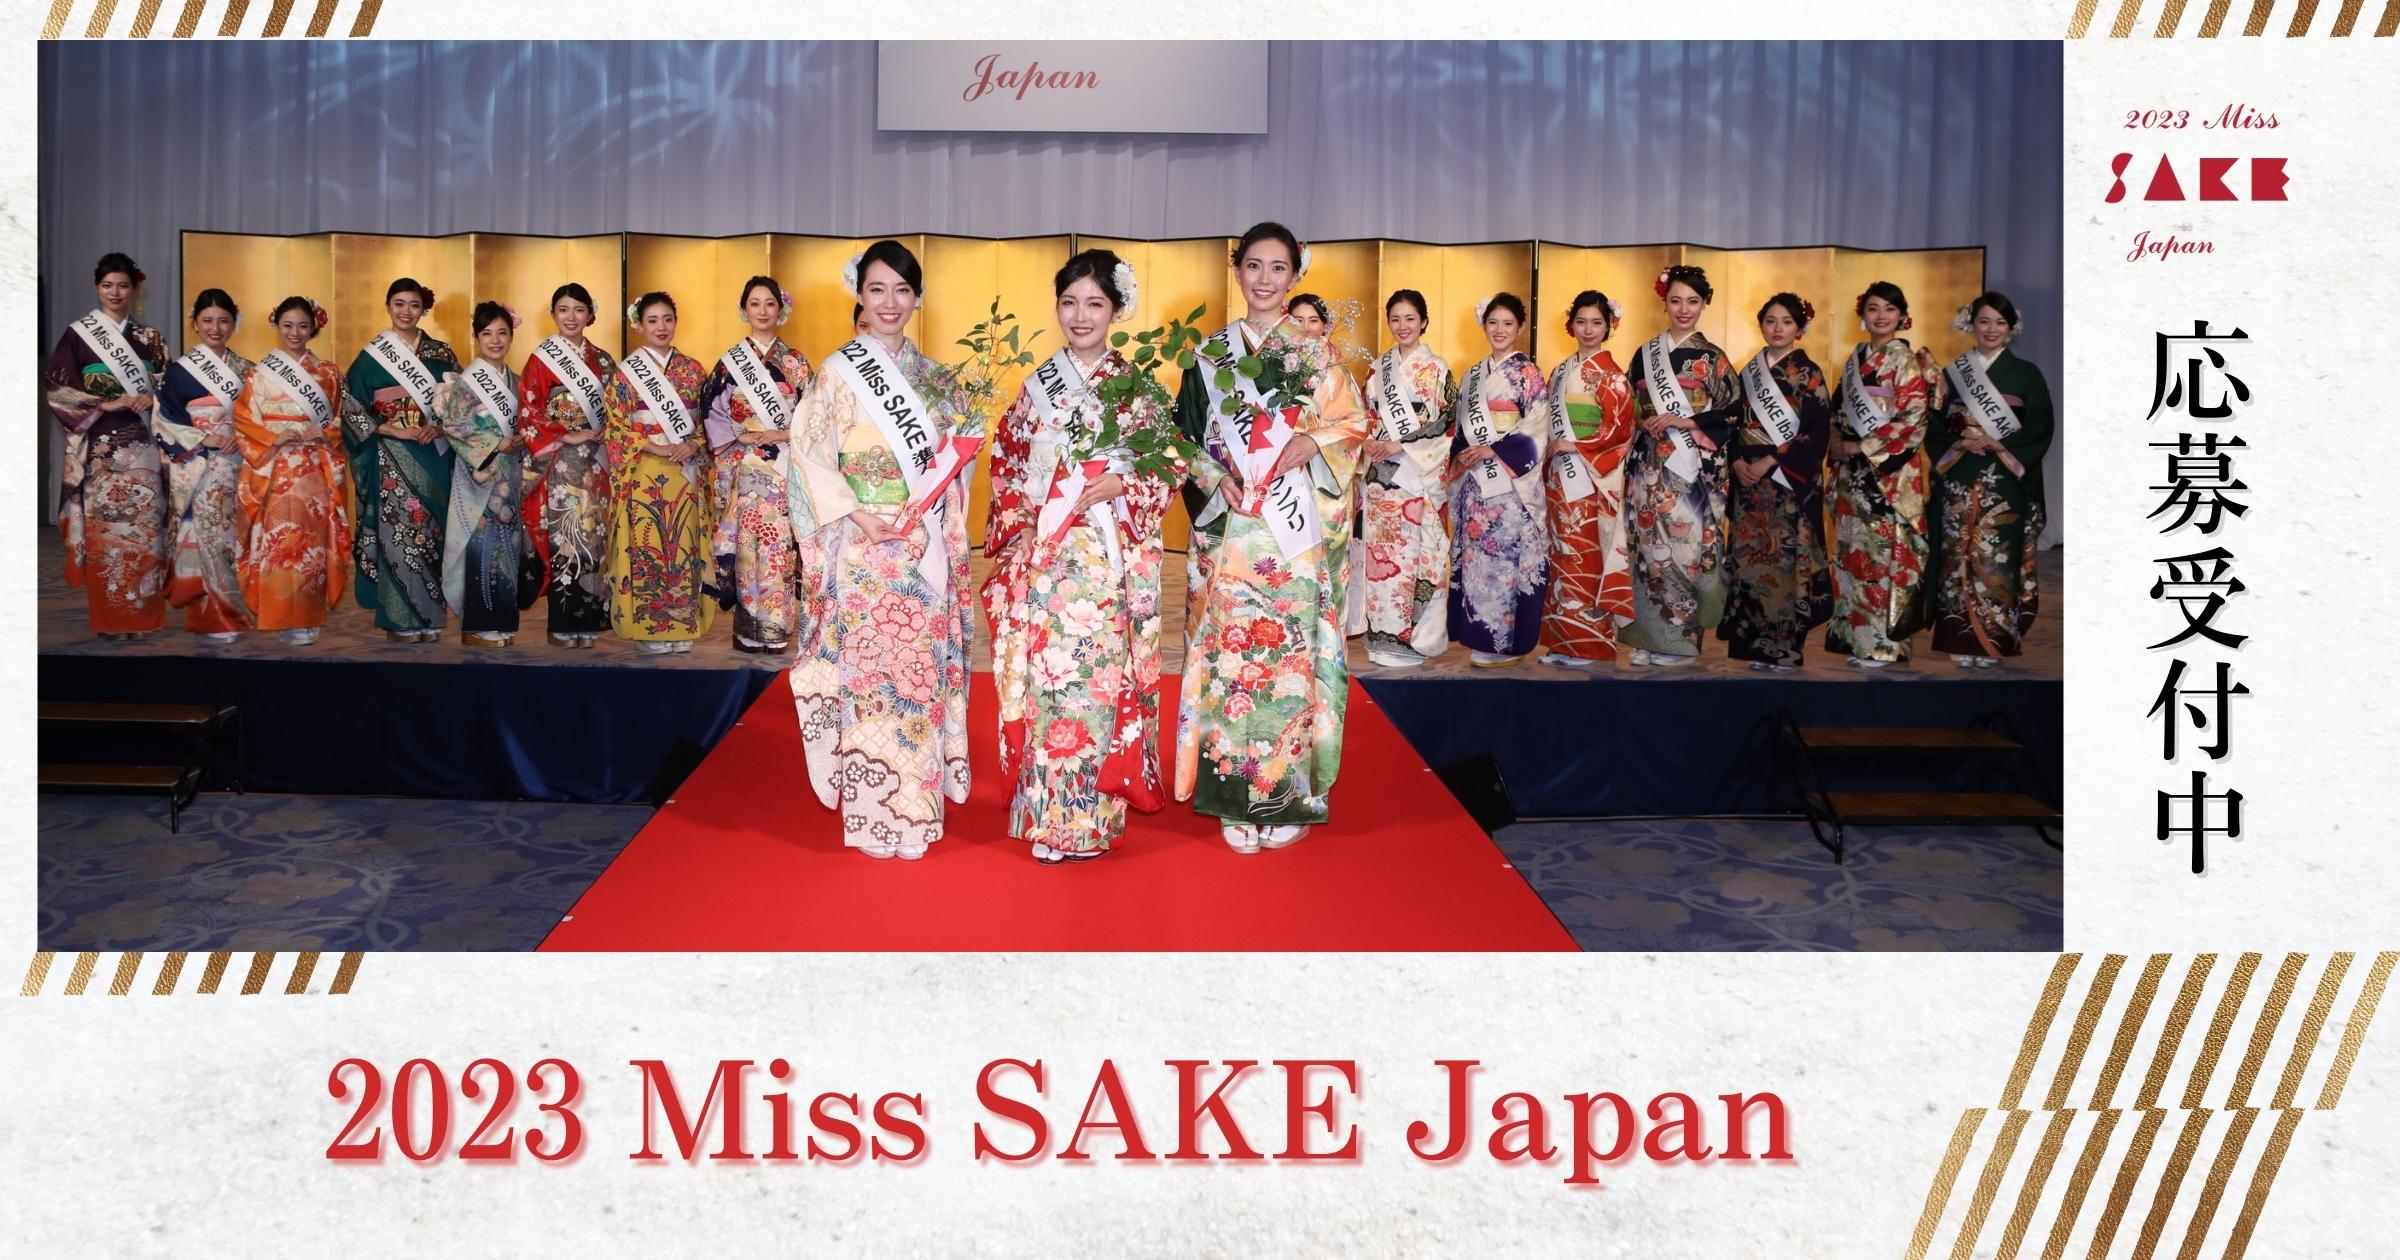 23 Miss Sake Japan コンテスト募集概要 応募フォーム Miss Sake ミス日本酒